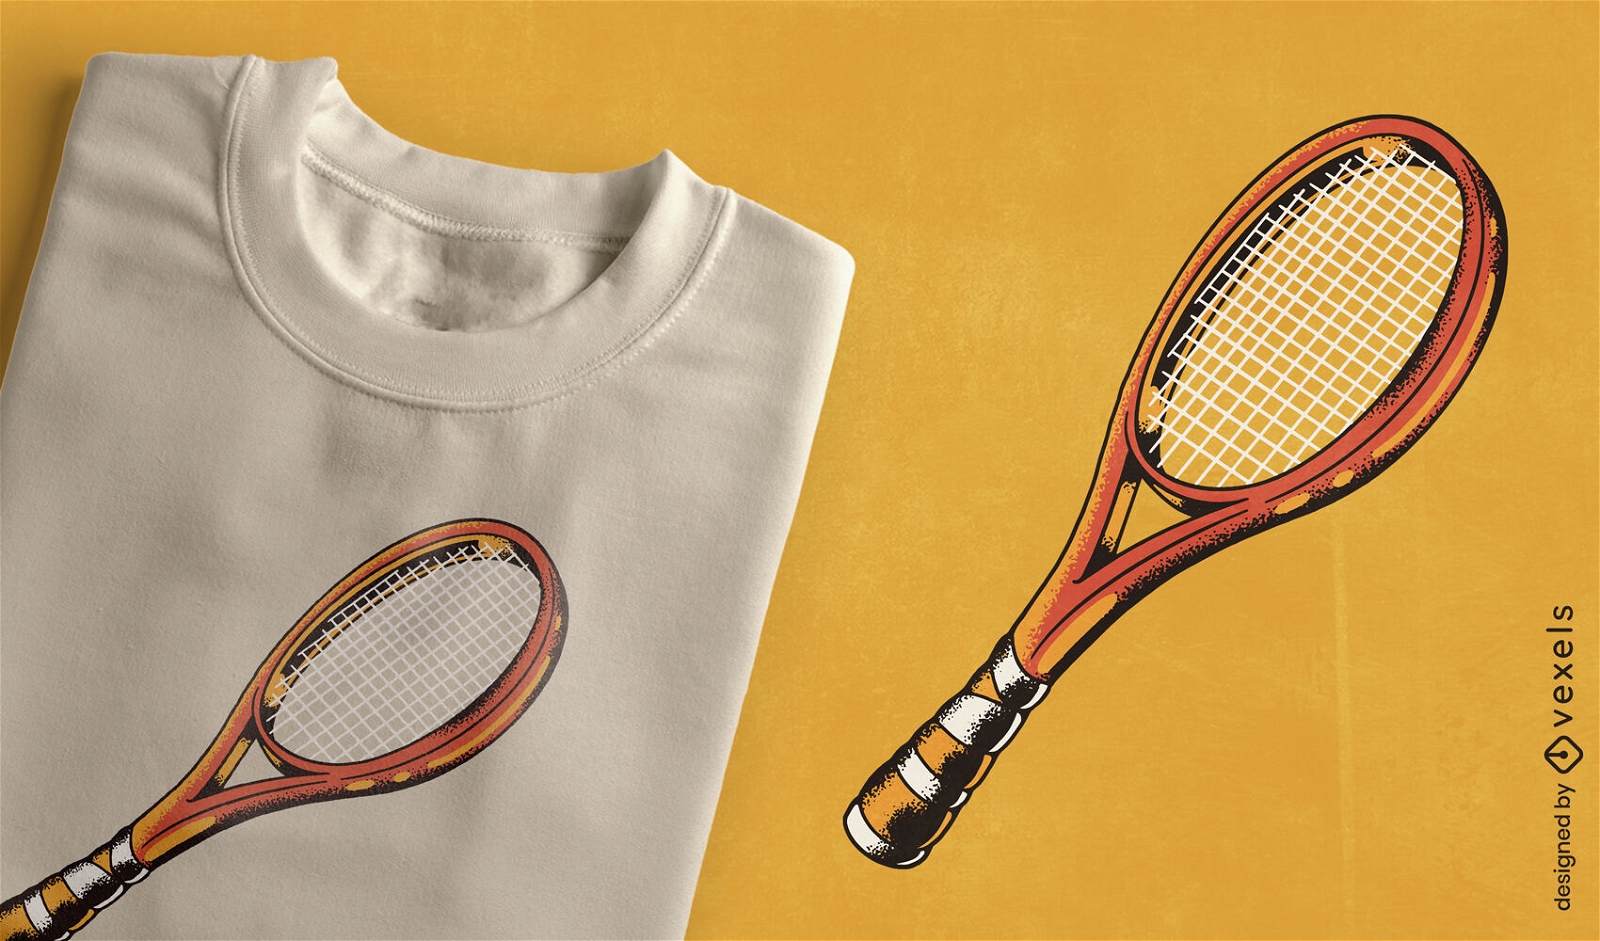 Dise?o de camiseta con textura de raqueta de tenis.